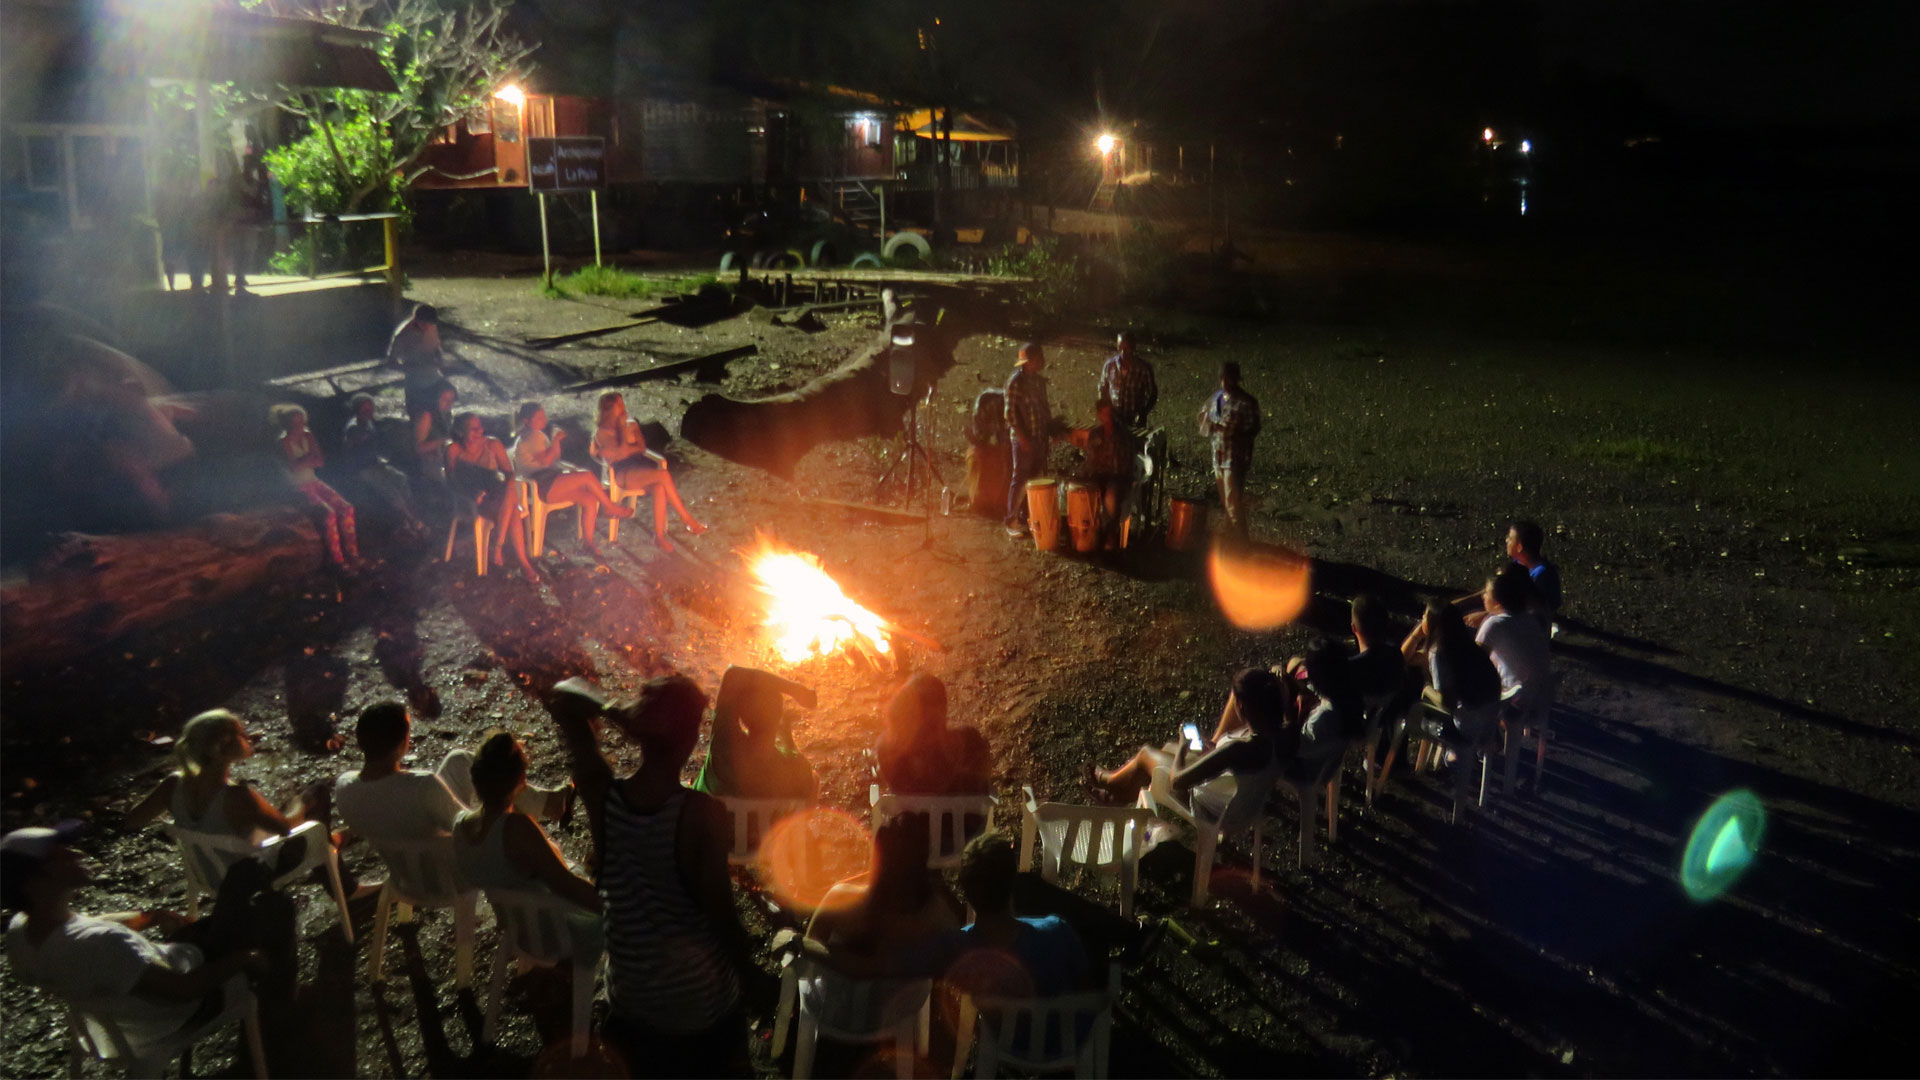 Fotografía de una fiesta nocturna con fogata y música folclórica